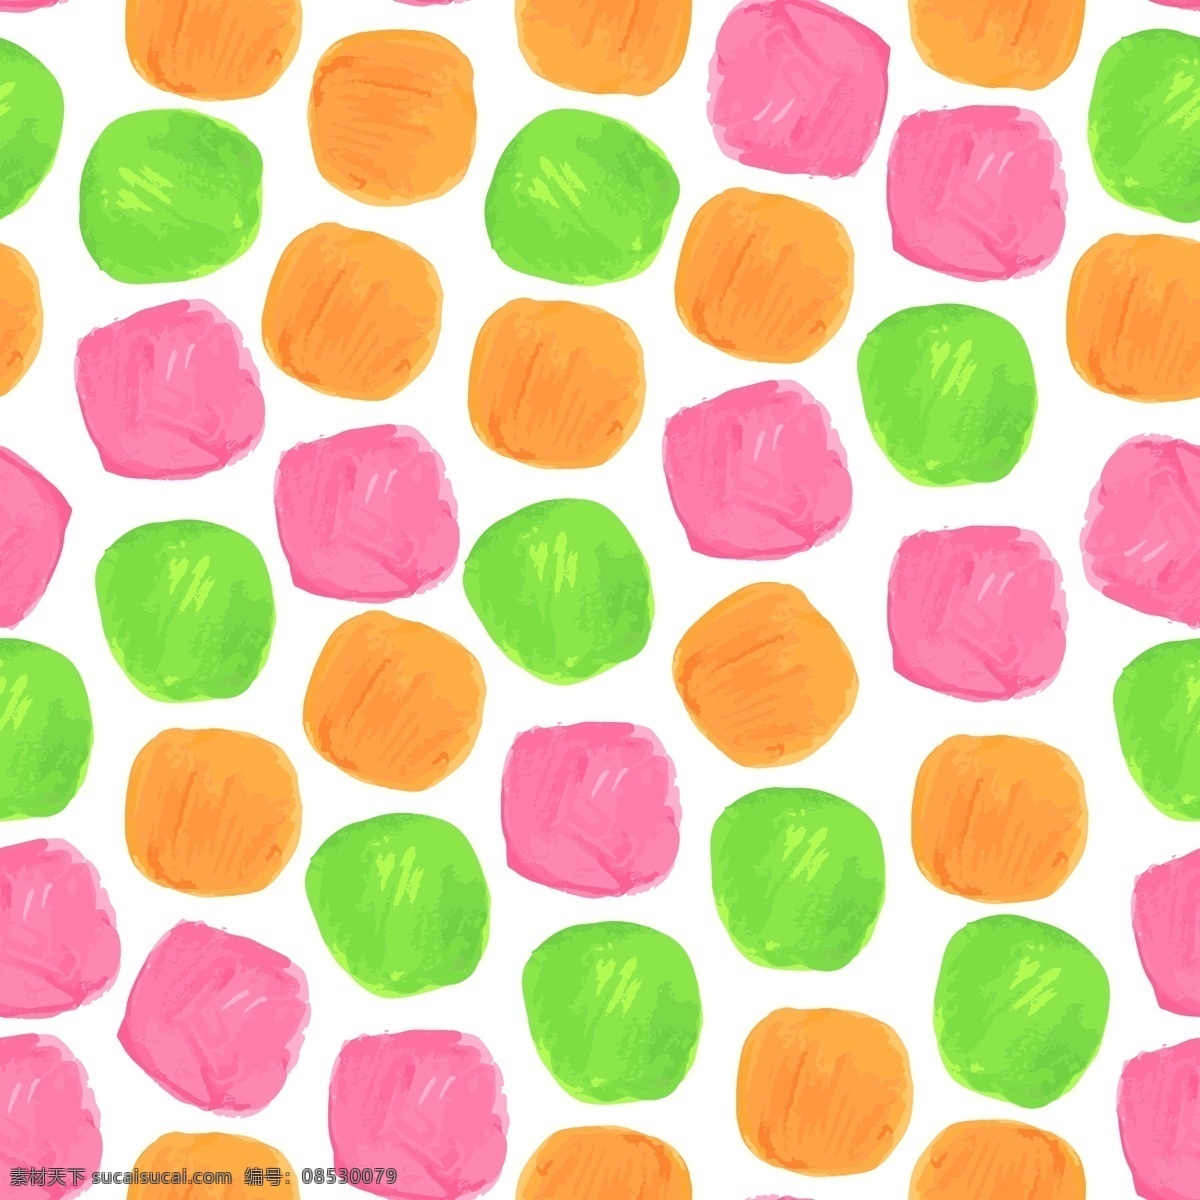 颜色 鲜艳 圆点 背景 矢量 橙色 粉红色 绿色 平面素材 设计素材 矢量素材 水彩